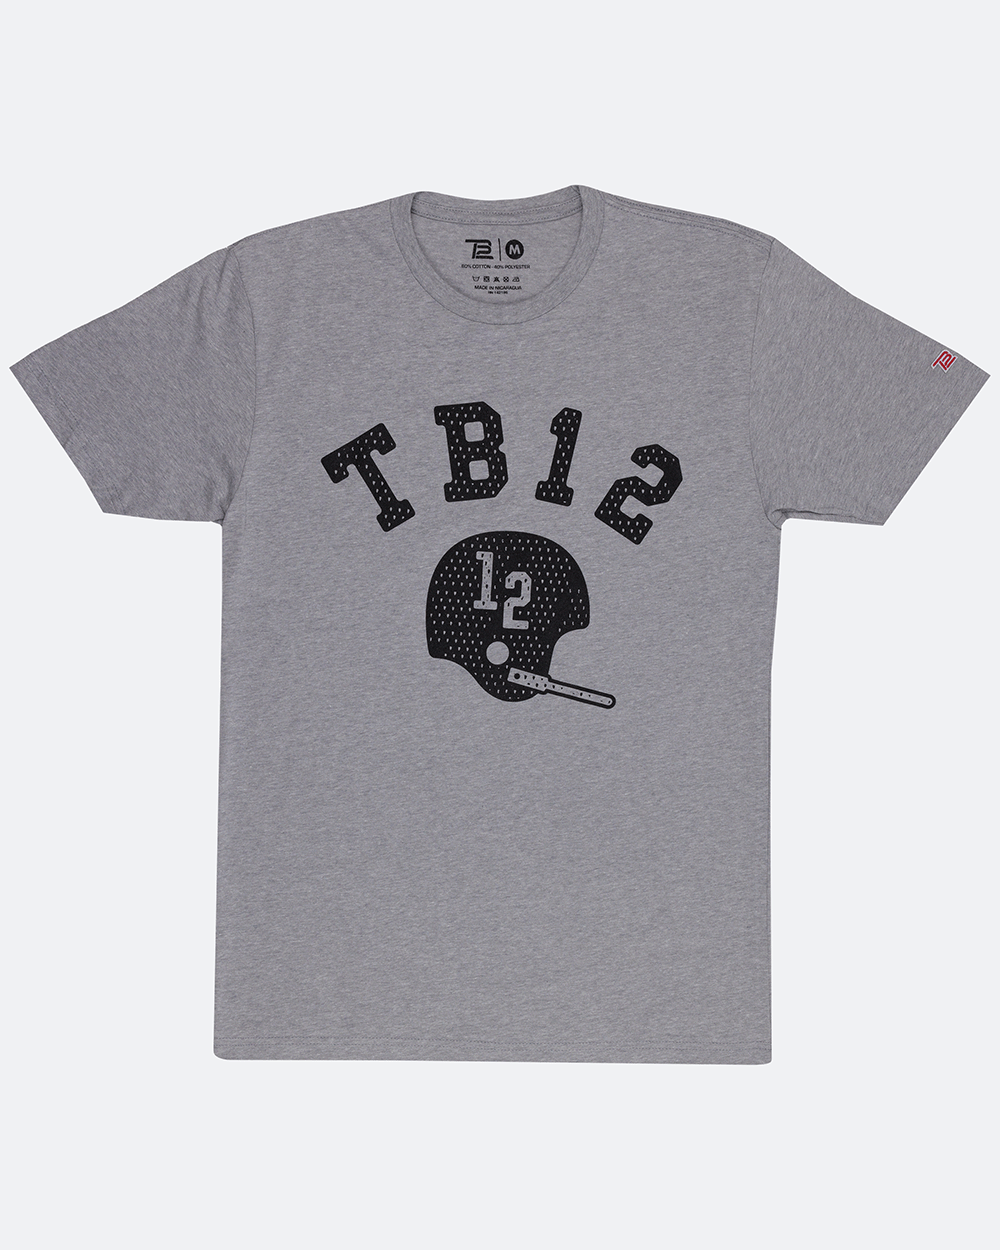 tb12 women's shirt